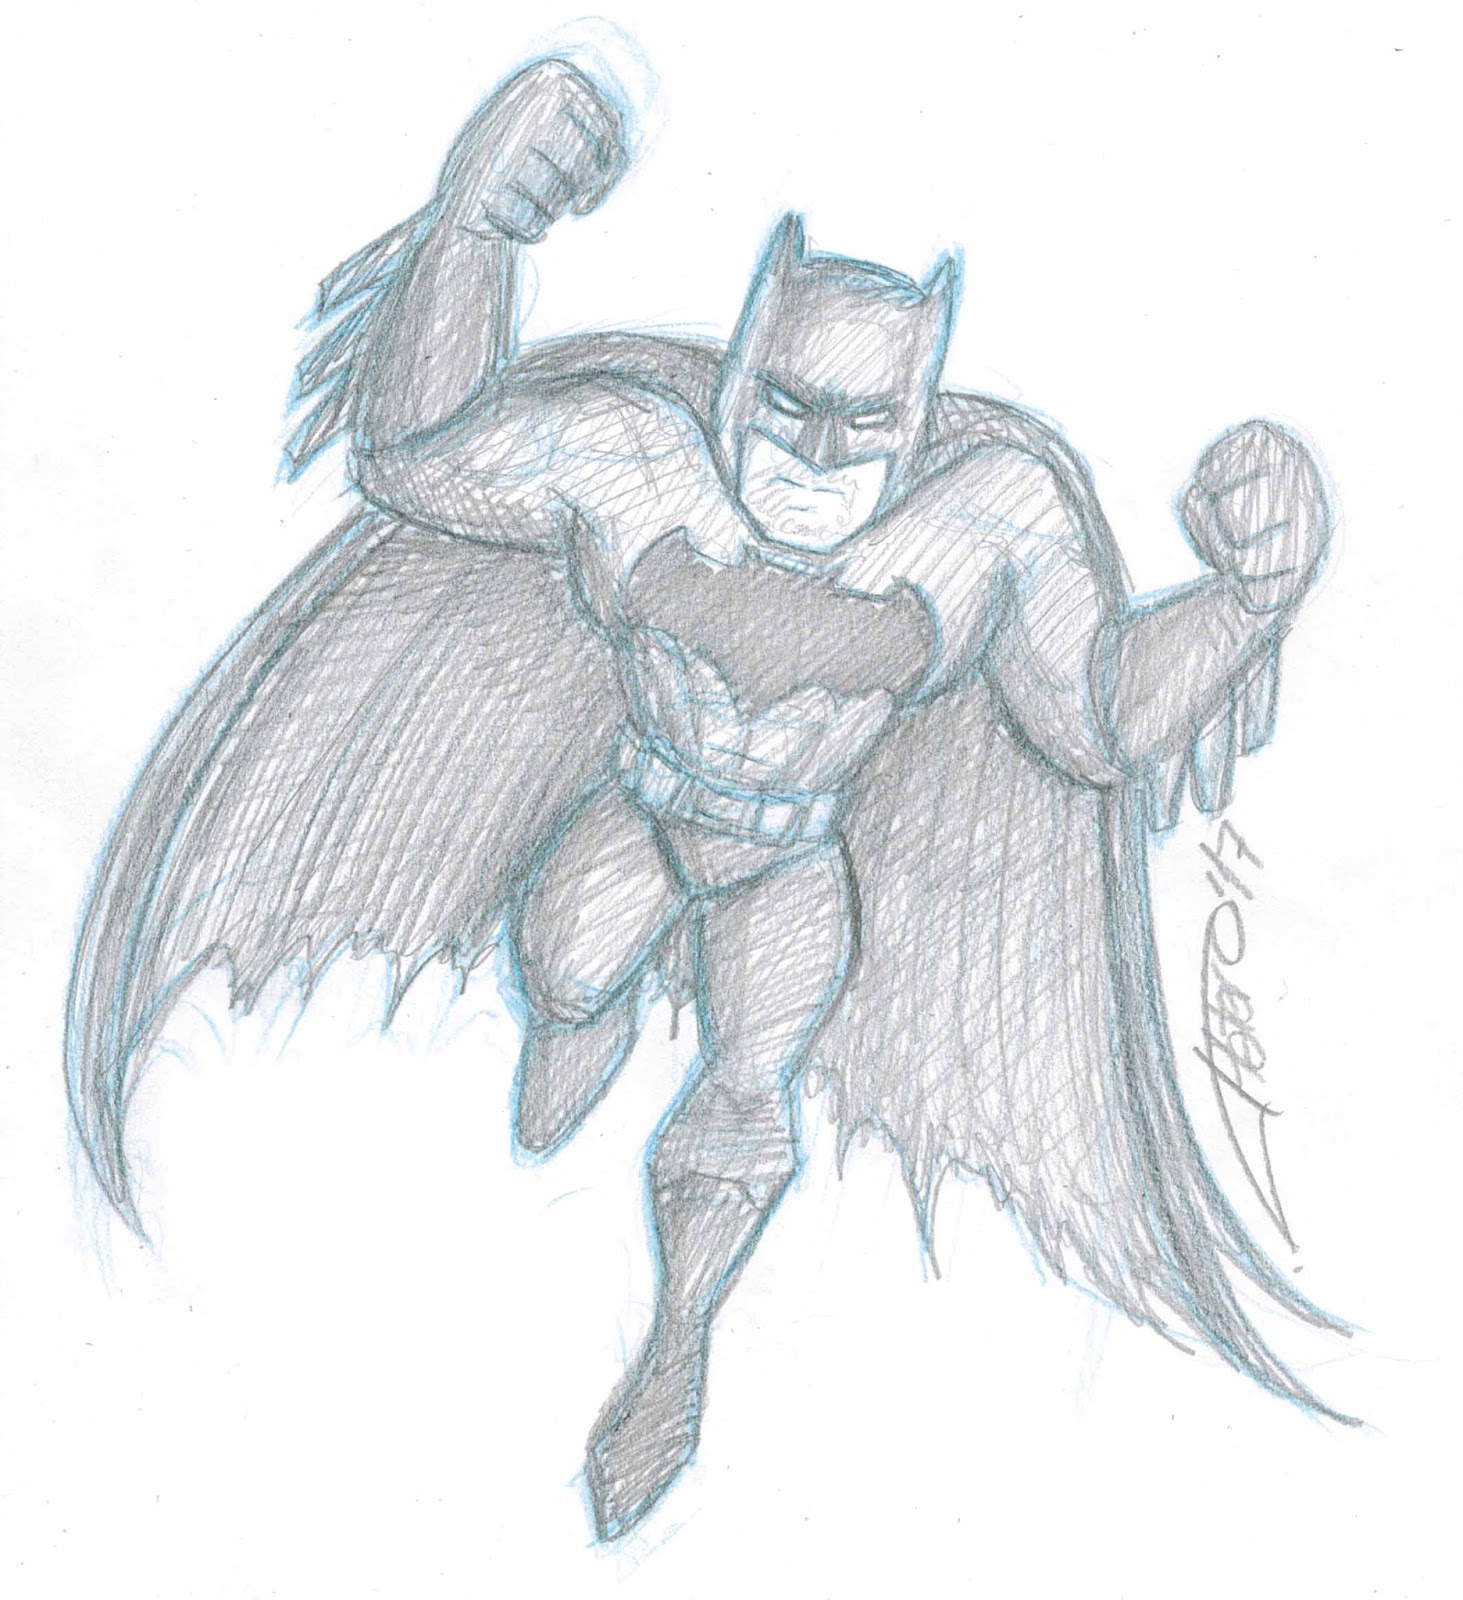 Platero: Caricaturas, Cómics e Ilustraciones: Batman a lápiz